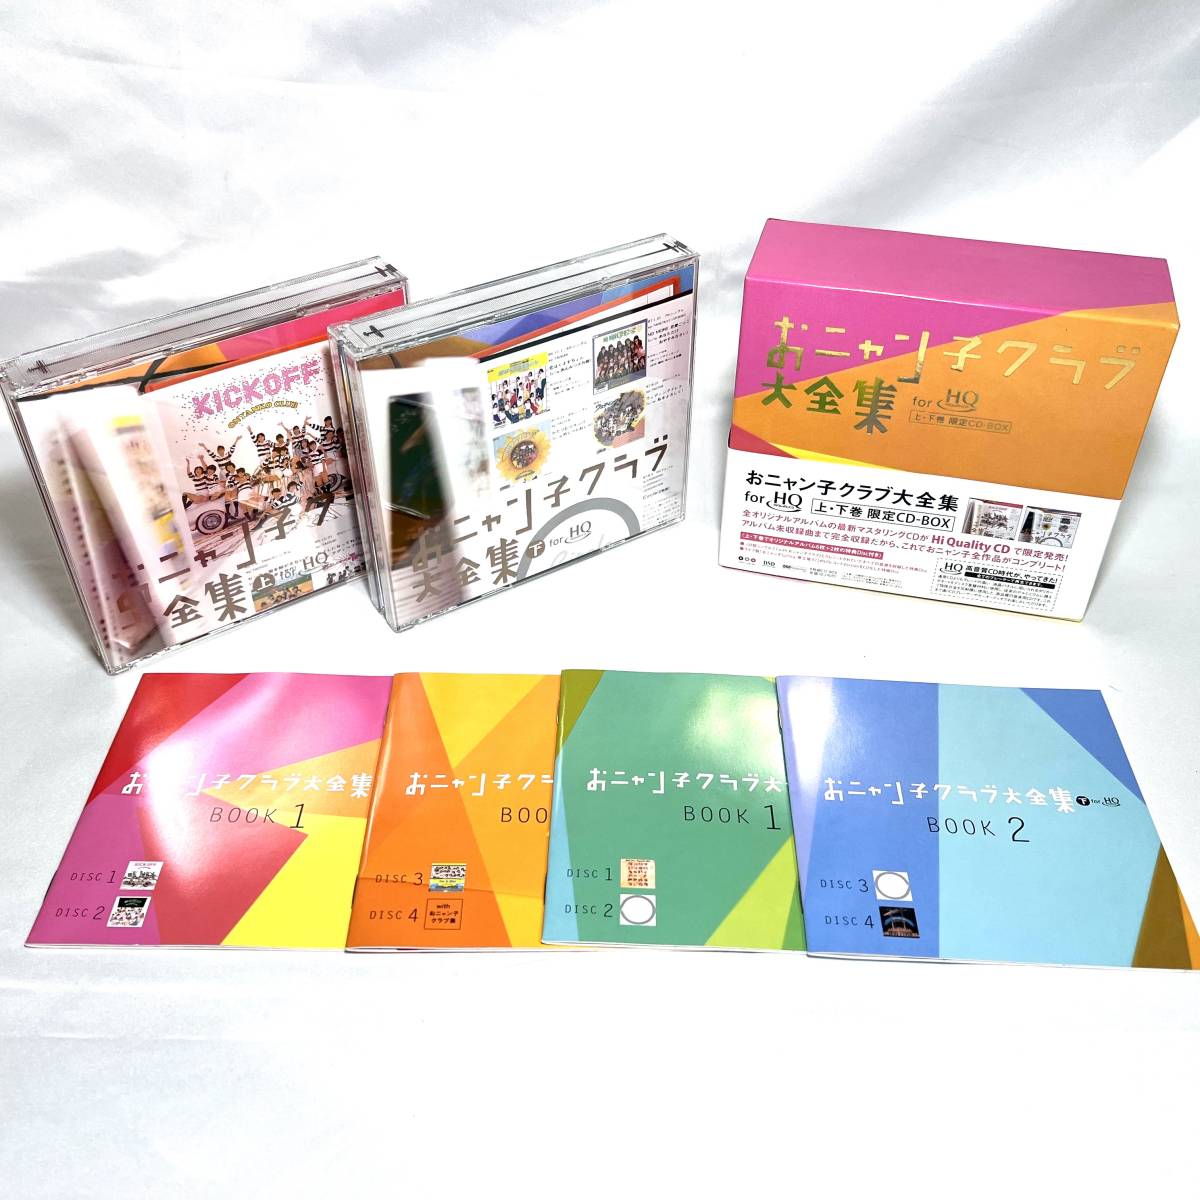 高級ブランド 専用「おニャン子クラブCD-BOX「シングルレコード復刻